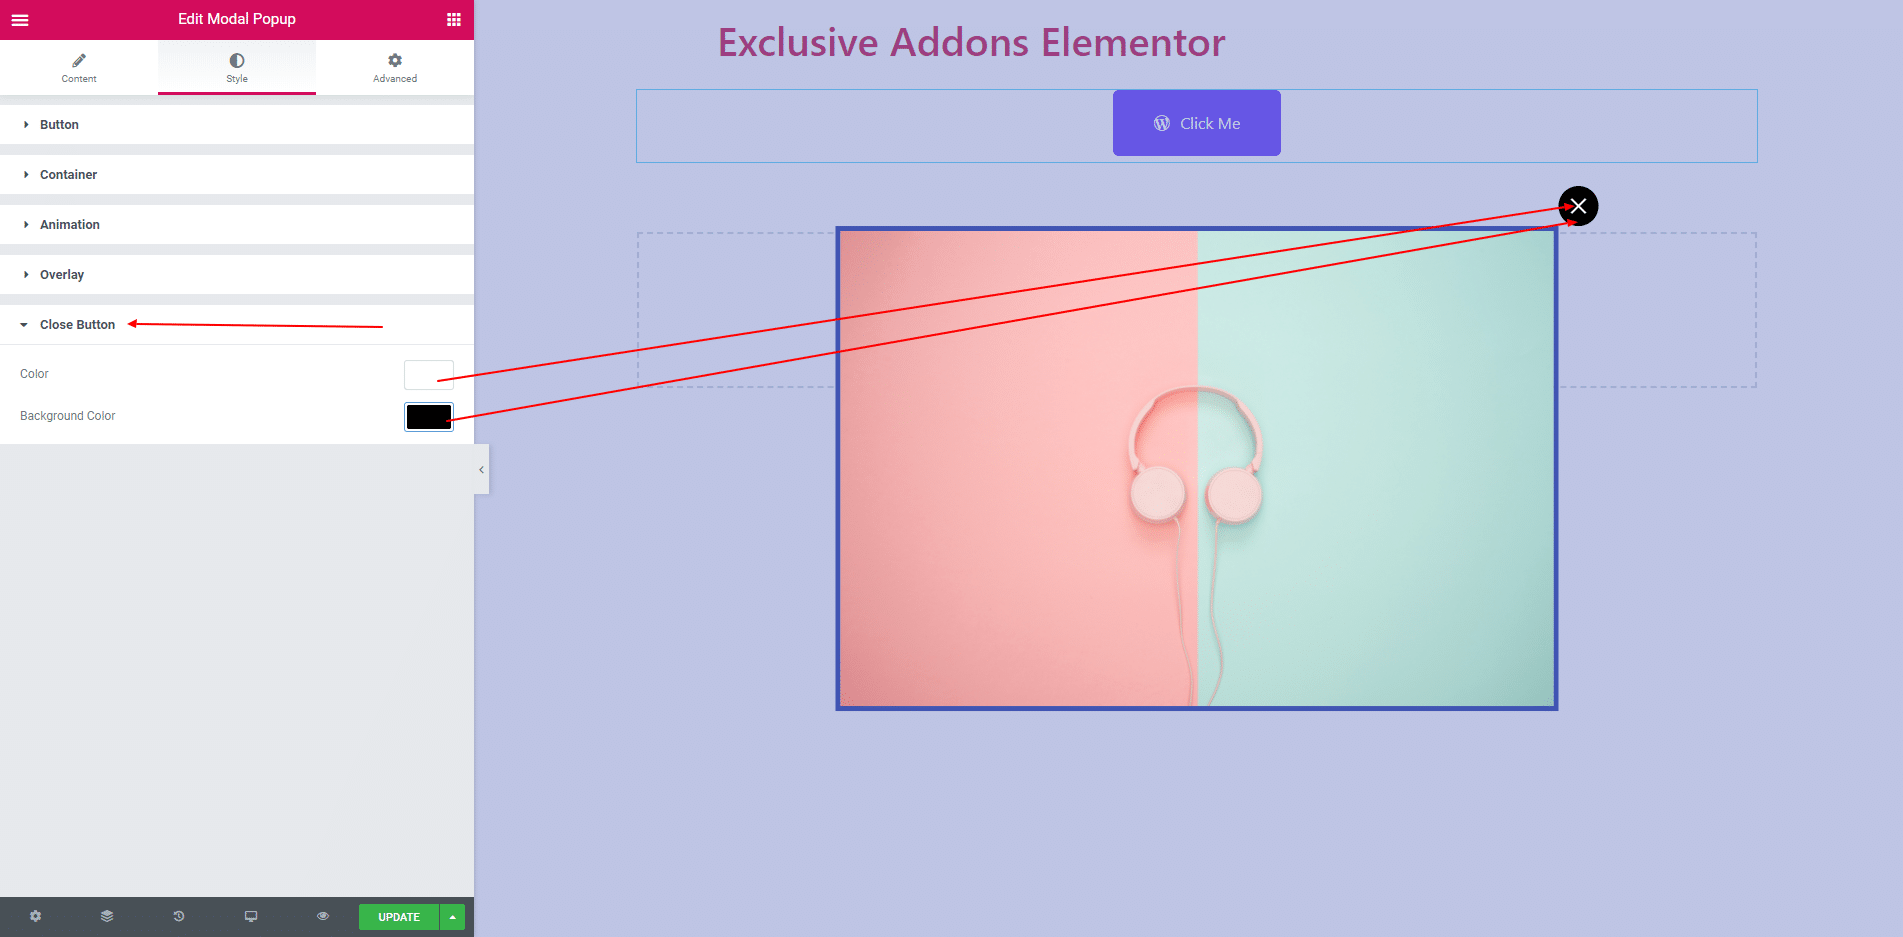 Từ những cấu hình đơn giản đến những thiết kế đẹp mắt, tiện ích popup Modal với Elementor đã trở thành một công cụ không thể thiếu cho các nhà thiết kế Web. Hãy cùng tôi khám phá và tạo ra những trang web độc đáo và thú vị cùng công cụ này.